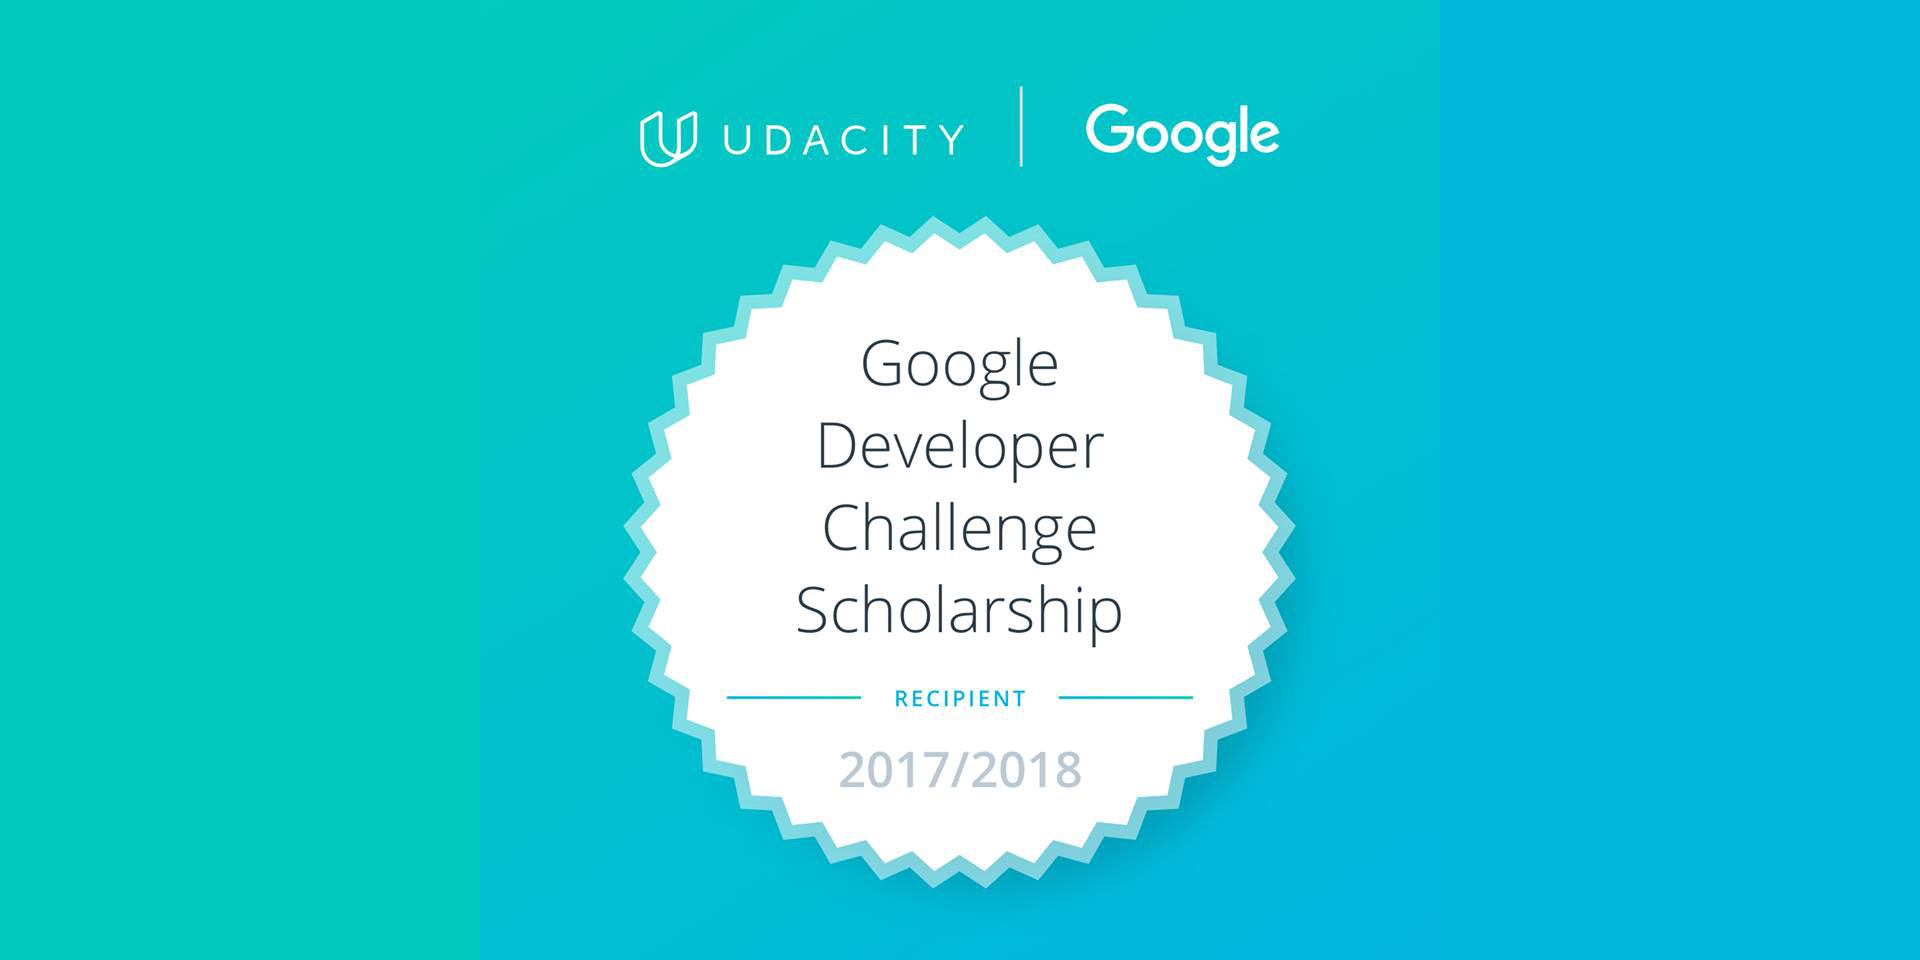 Udacity Google India Scholarship